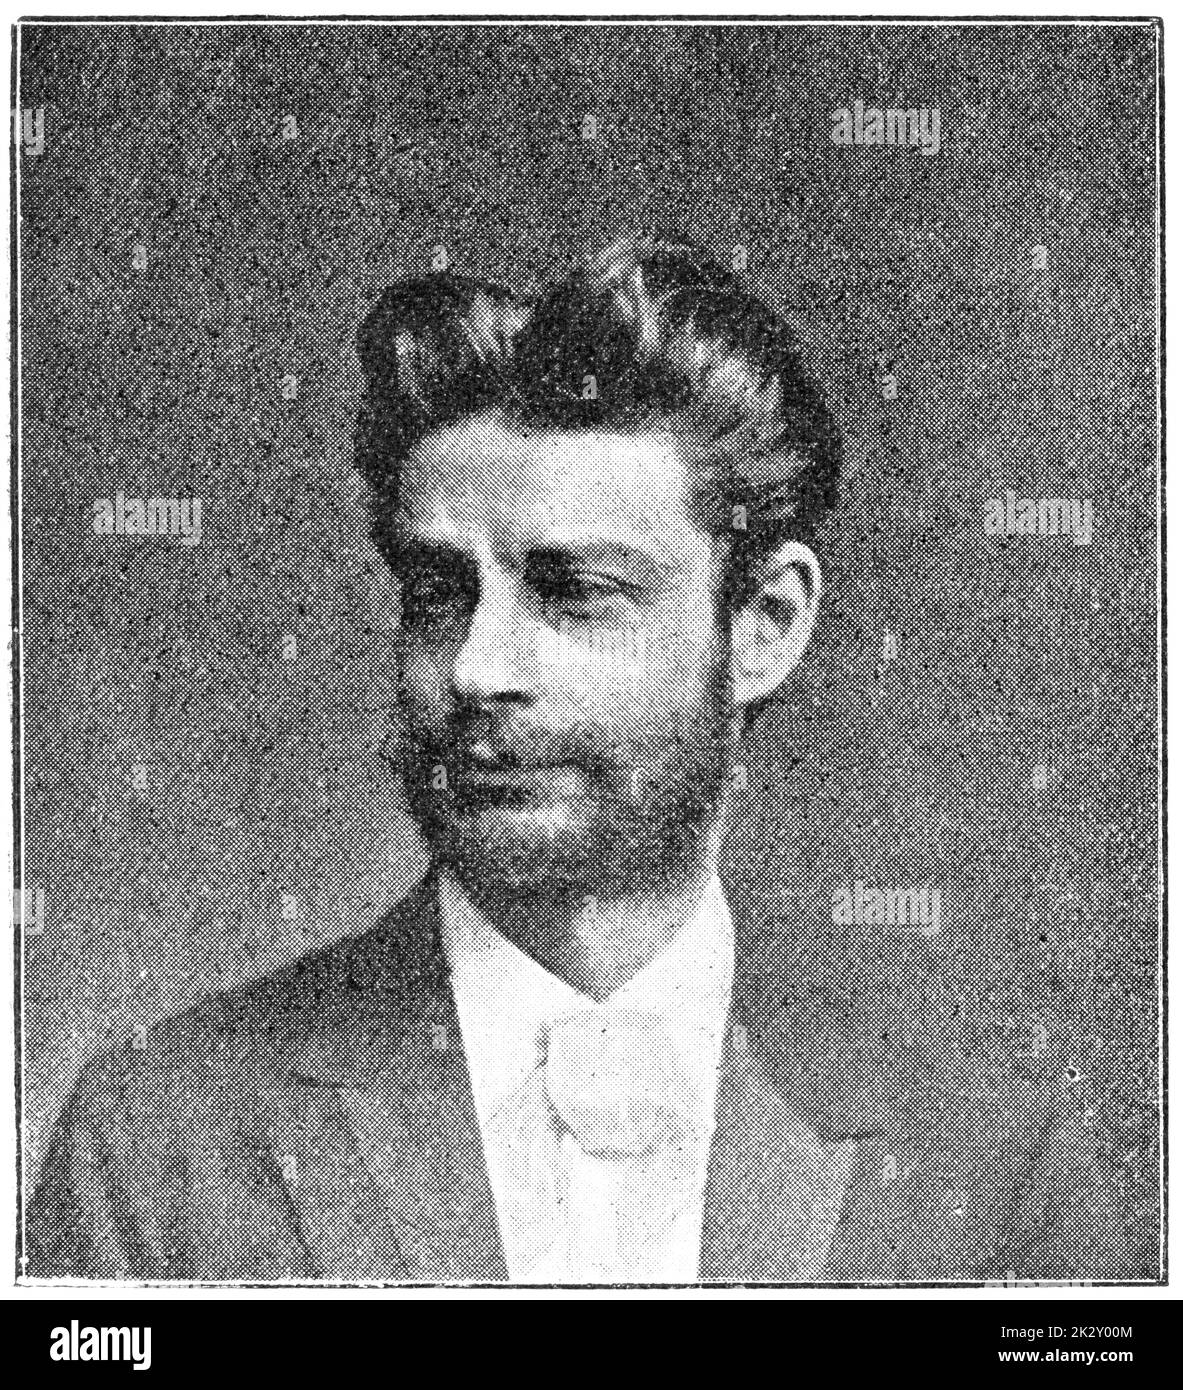 Porträt von Georg Morris Cohen Brandes - ein dänischer Kritiker und Gelehrter. Illustration des 19. Jahrhunderts. Weißer Hintergrund. Stockfoto